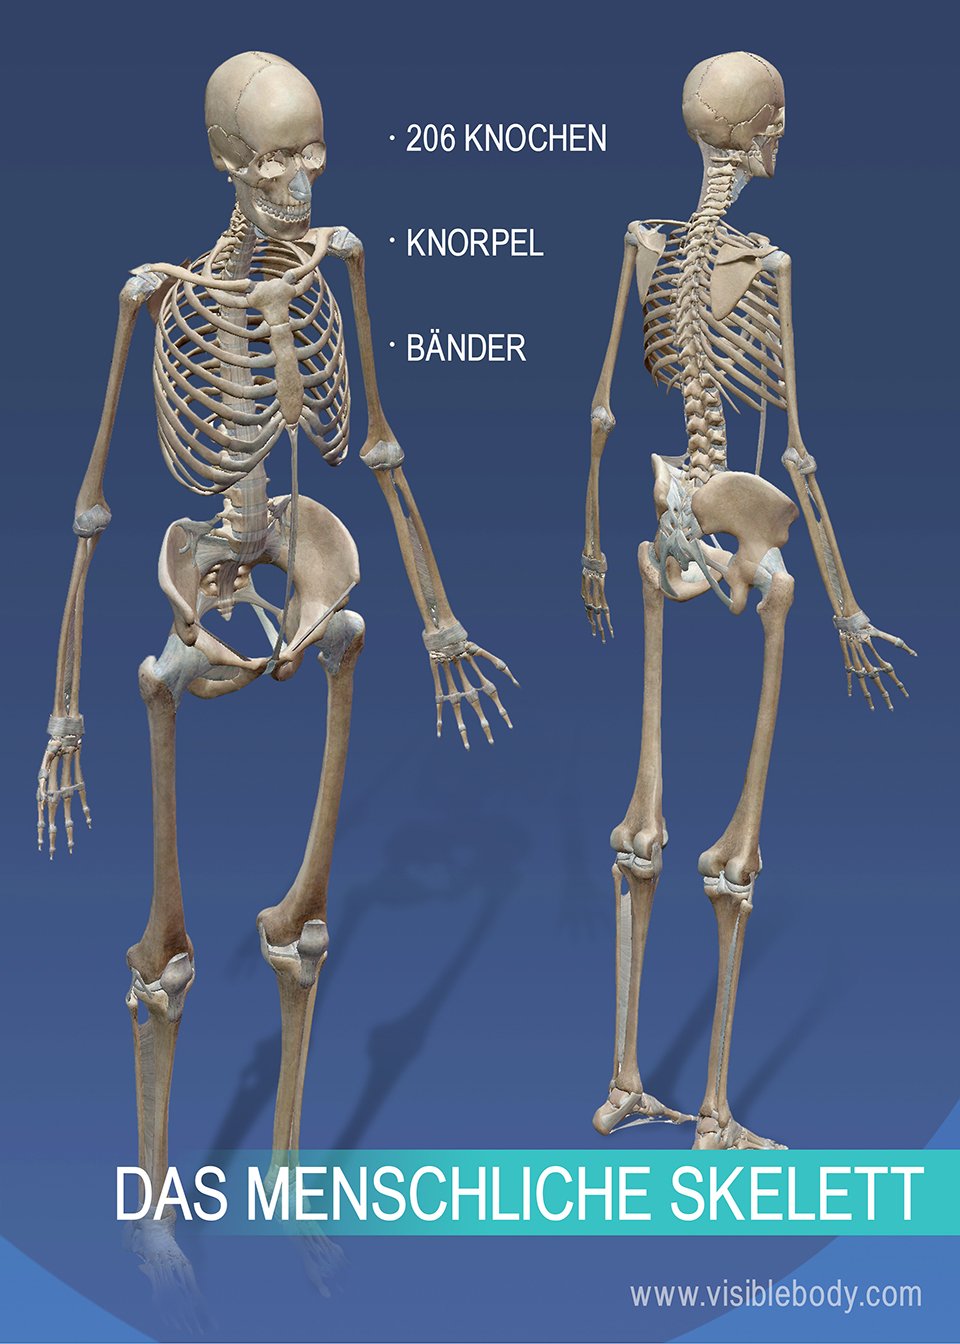 Das Skelettsystem besteht aus 206 Knochen sowie Knorpeln und Bändern